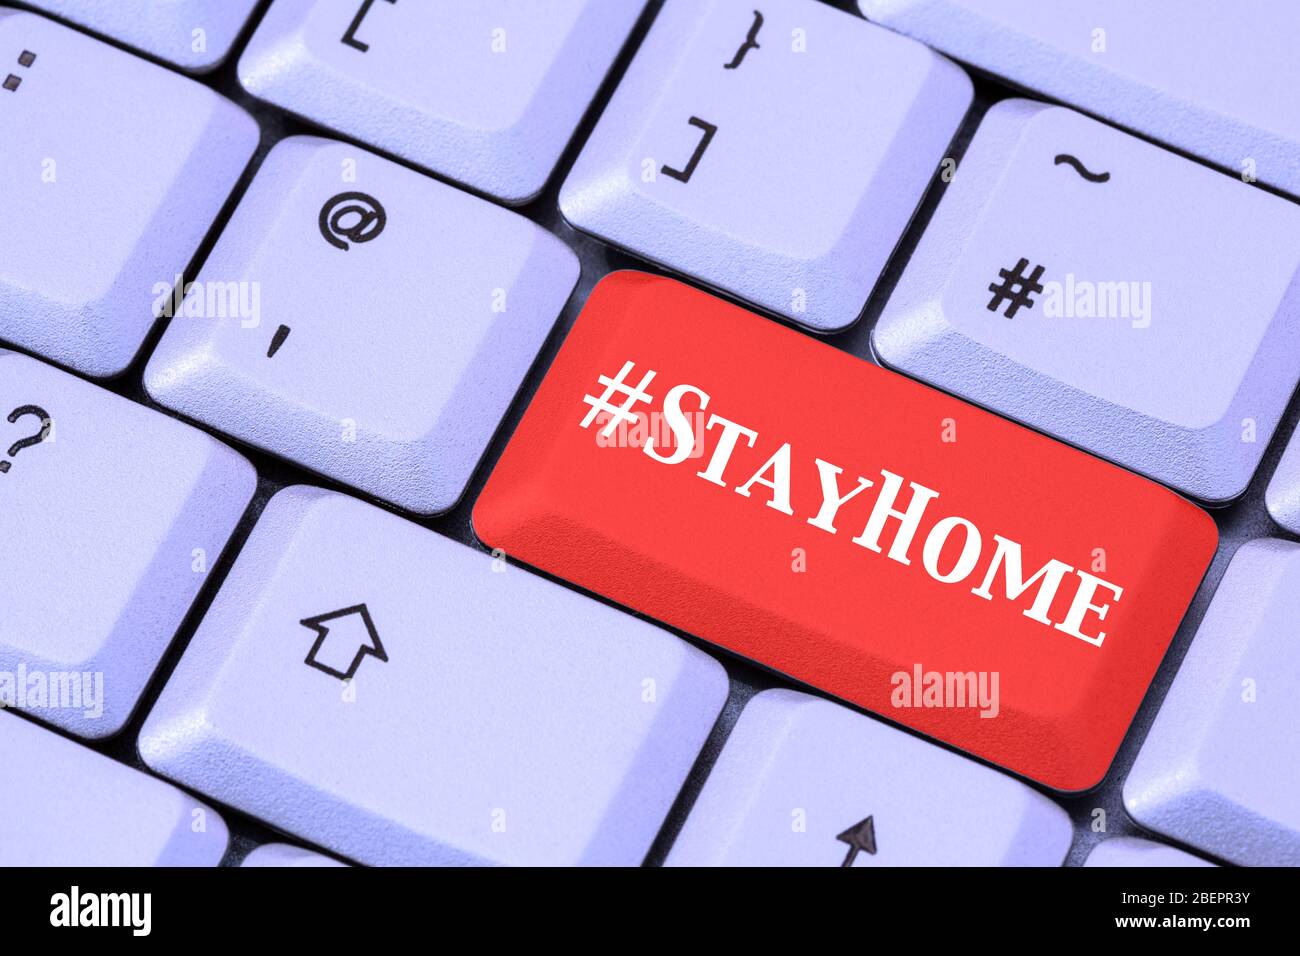 Un clavier avec #StayHome sur une touche entrée rouge. Concept de confinement à domicile en avril 2020 en cas de pandémie du coronavirus Covid-19. Angleterre, Royaume-Uni, Grande-Bretagne Banque D'Images